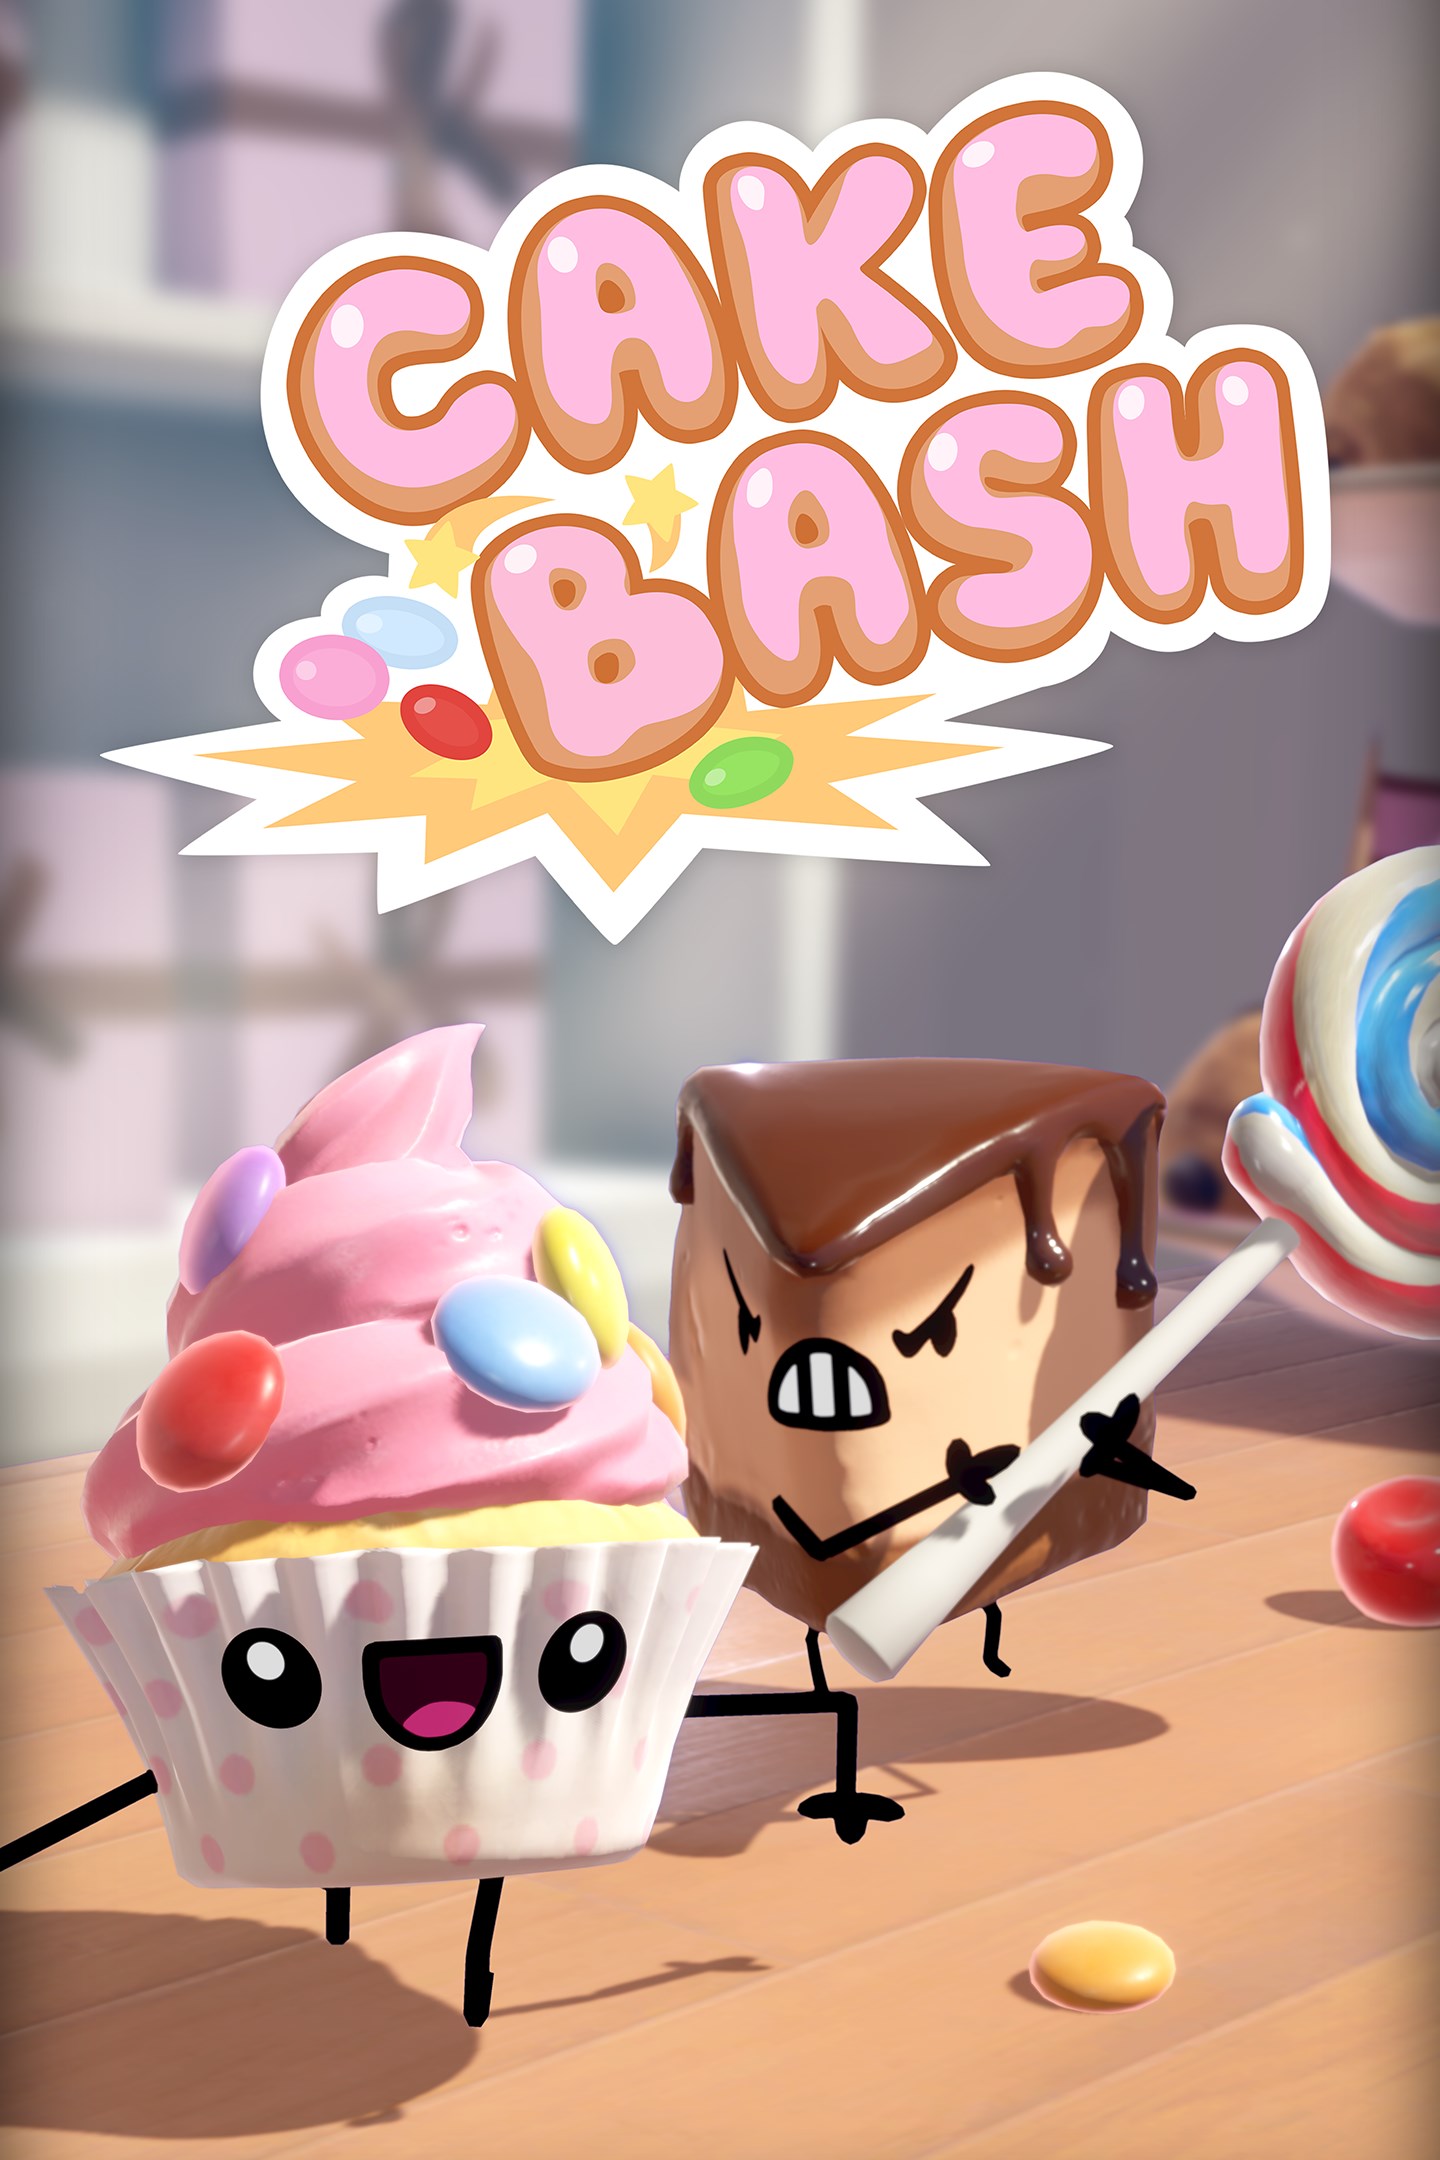 Lernen Sie die Kuchen von Cake Bash kennen, die am 15. Oktober auf Xbox One erscheinen